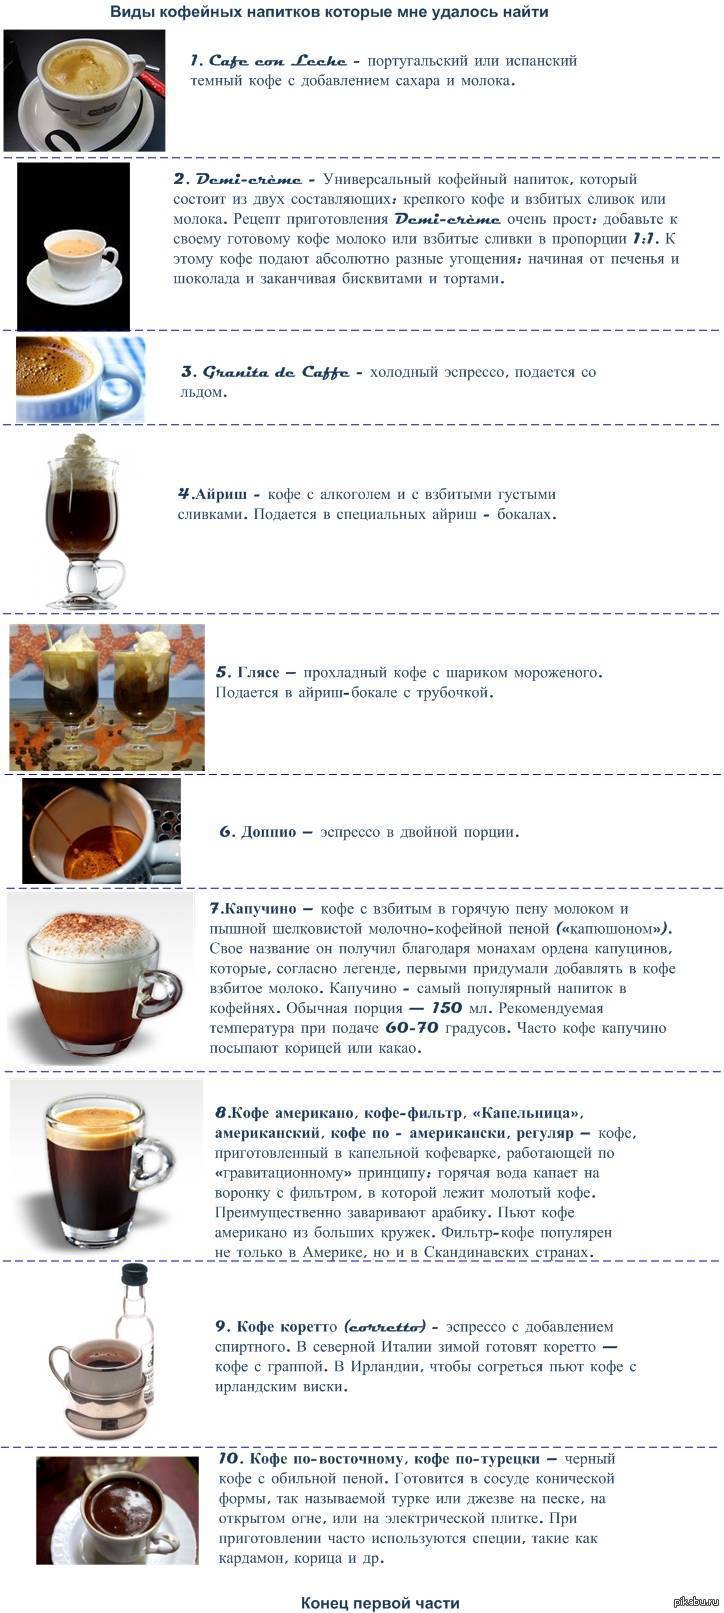 Греческий кофе фраппе